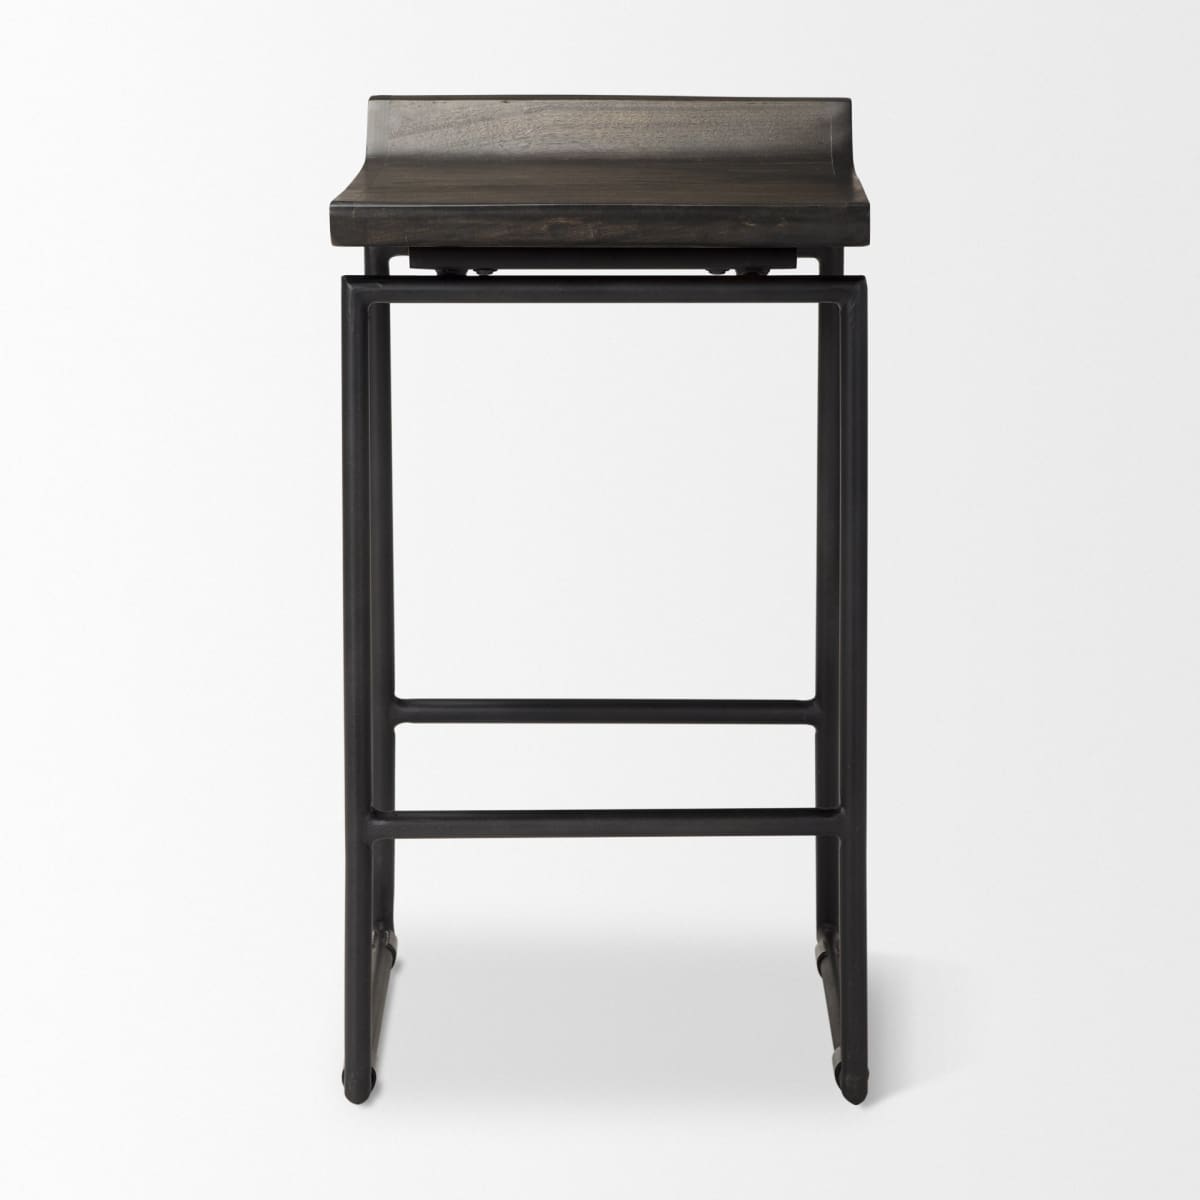 Givens Bar Counter Stool Black Wood | Black Metal | Counter - bar-stools